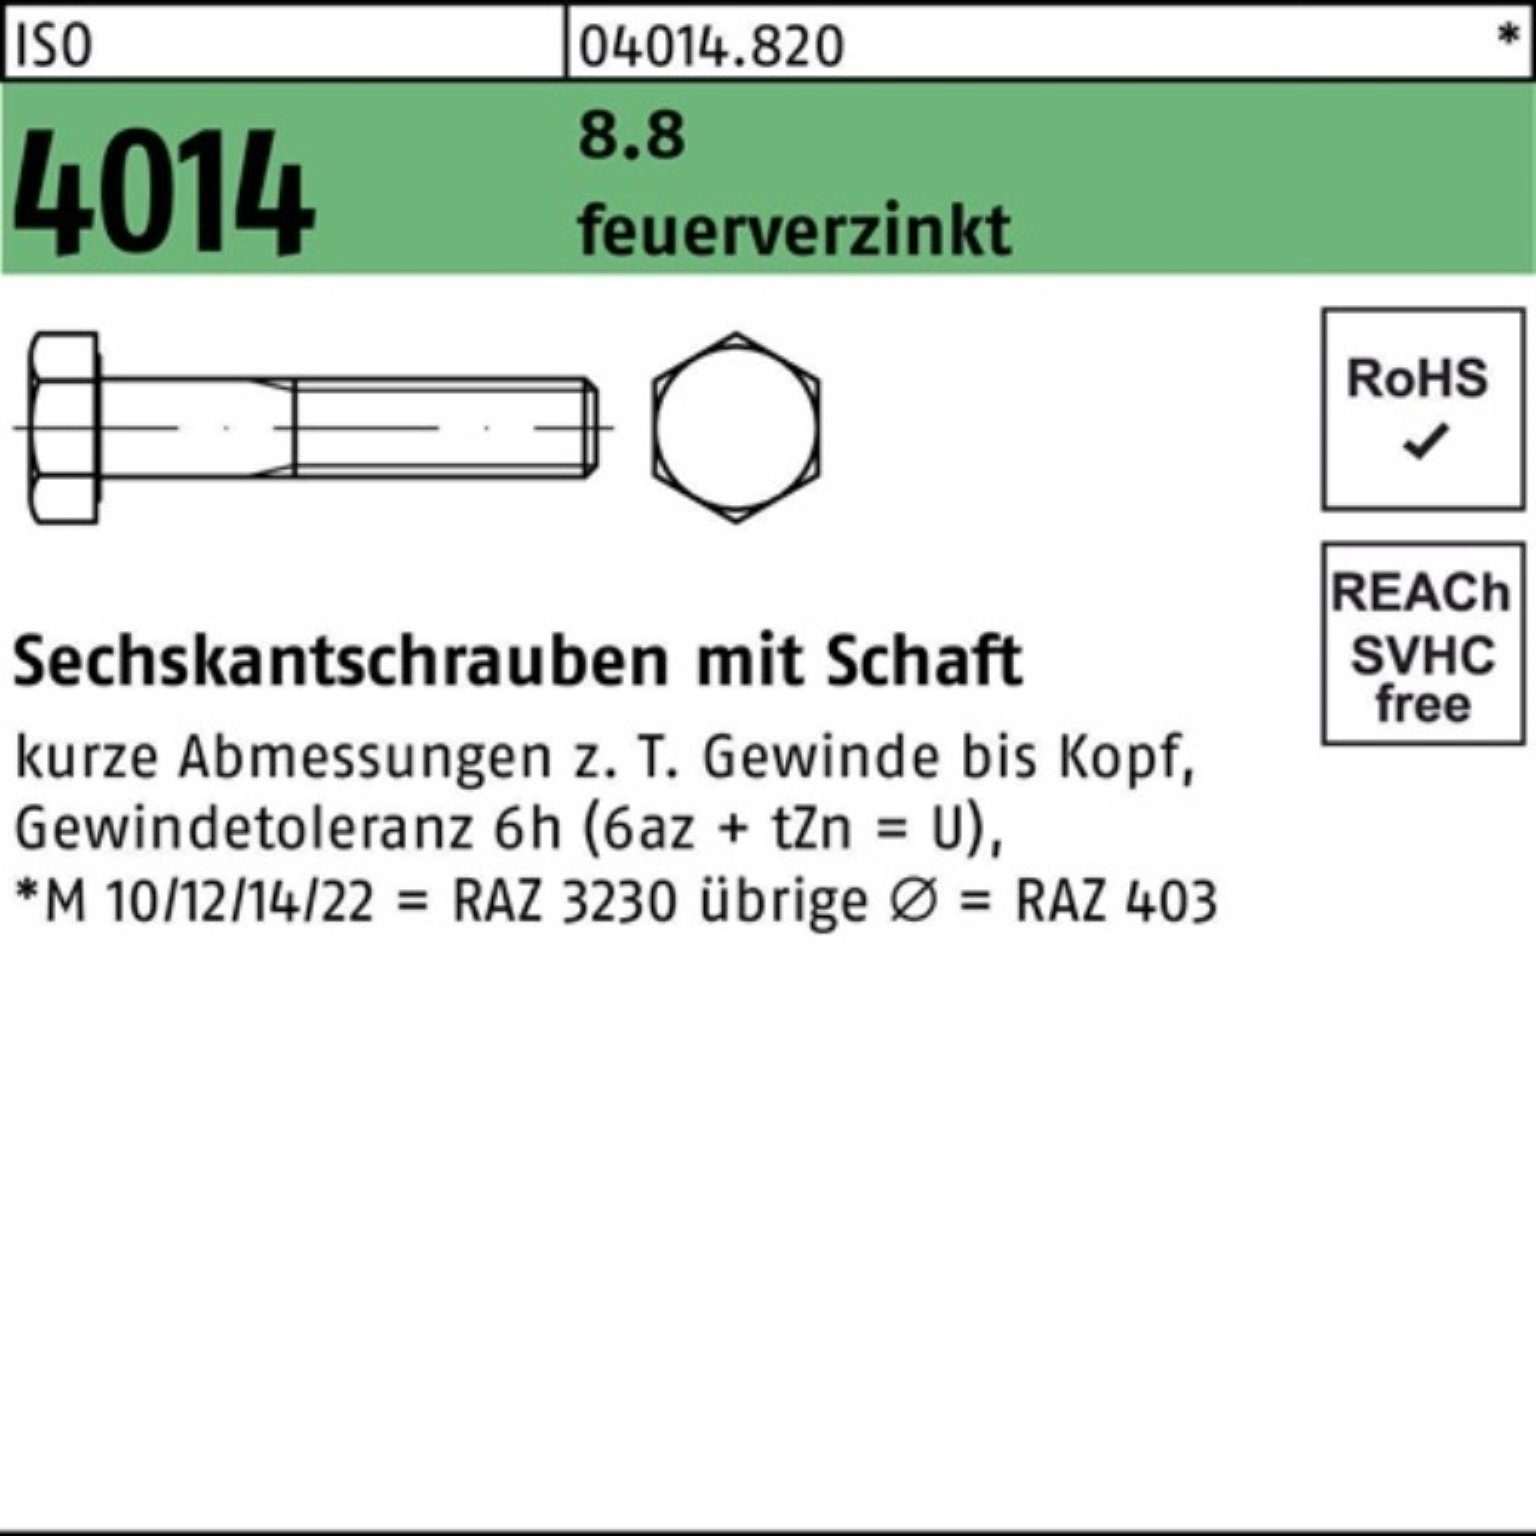 Bufab Sechskantschraube 100er Pack Sechskantschraube ISO 4014 Schaft M12x 180 8.8 feuerverz. 2